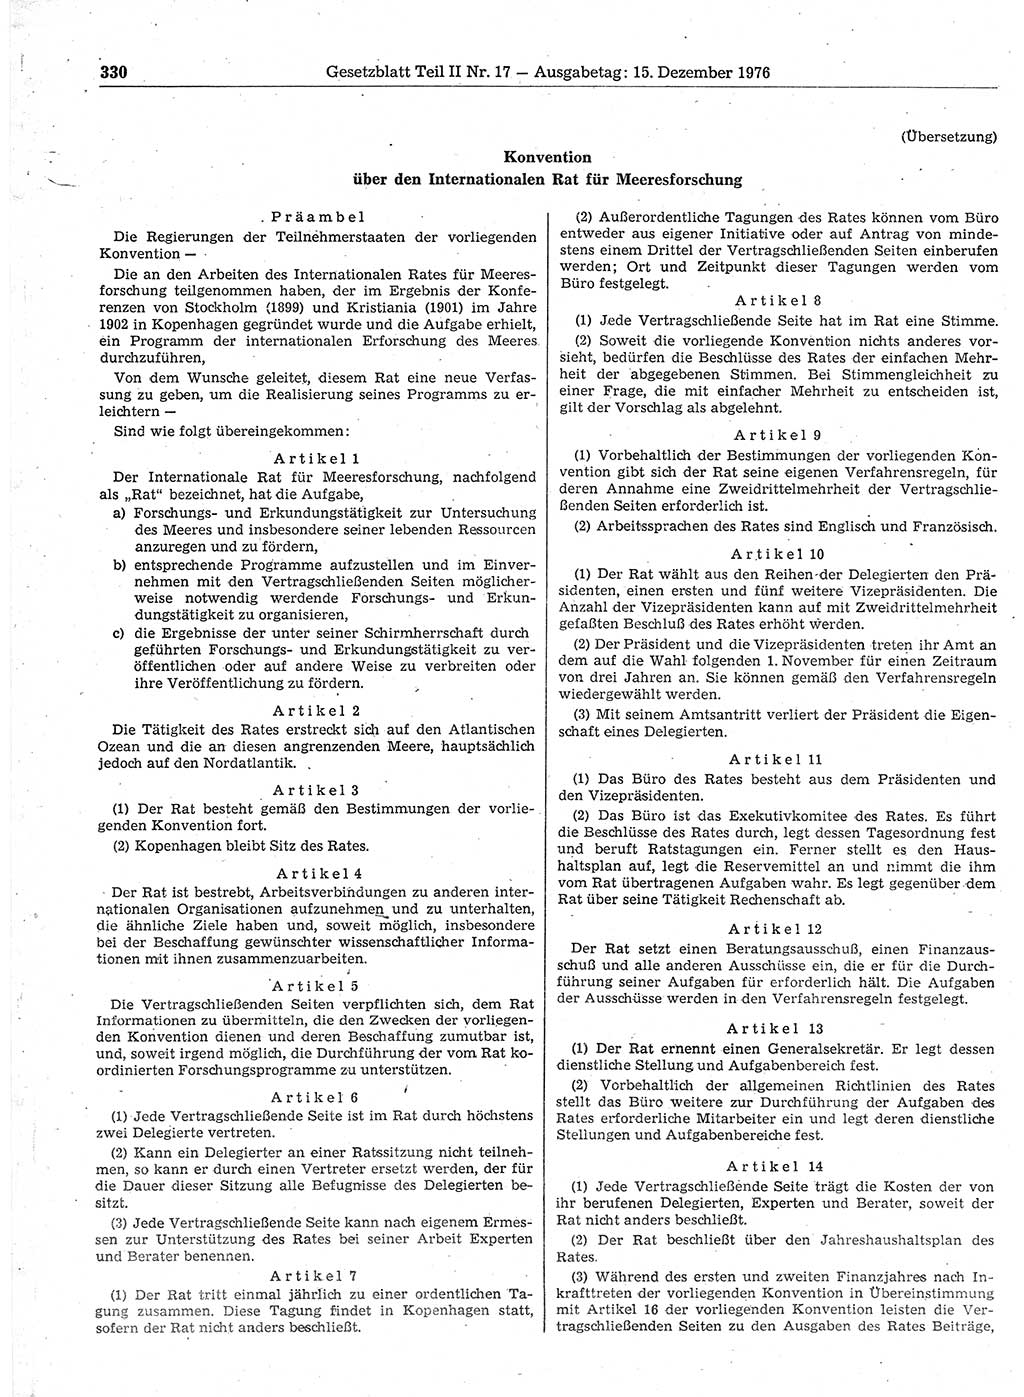 Gesetzblatt (GBl.) der Deutschen Demokratischen Republik (DDR) Teil ⅠⅠ 1976, Seite 330 (GBl. DDR ⅠⅠ 1976, S. 330)